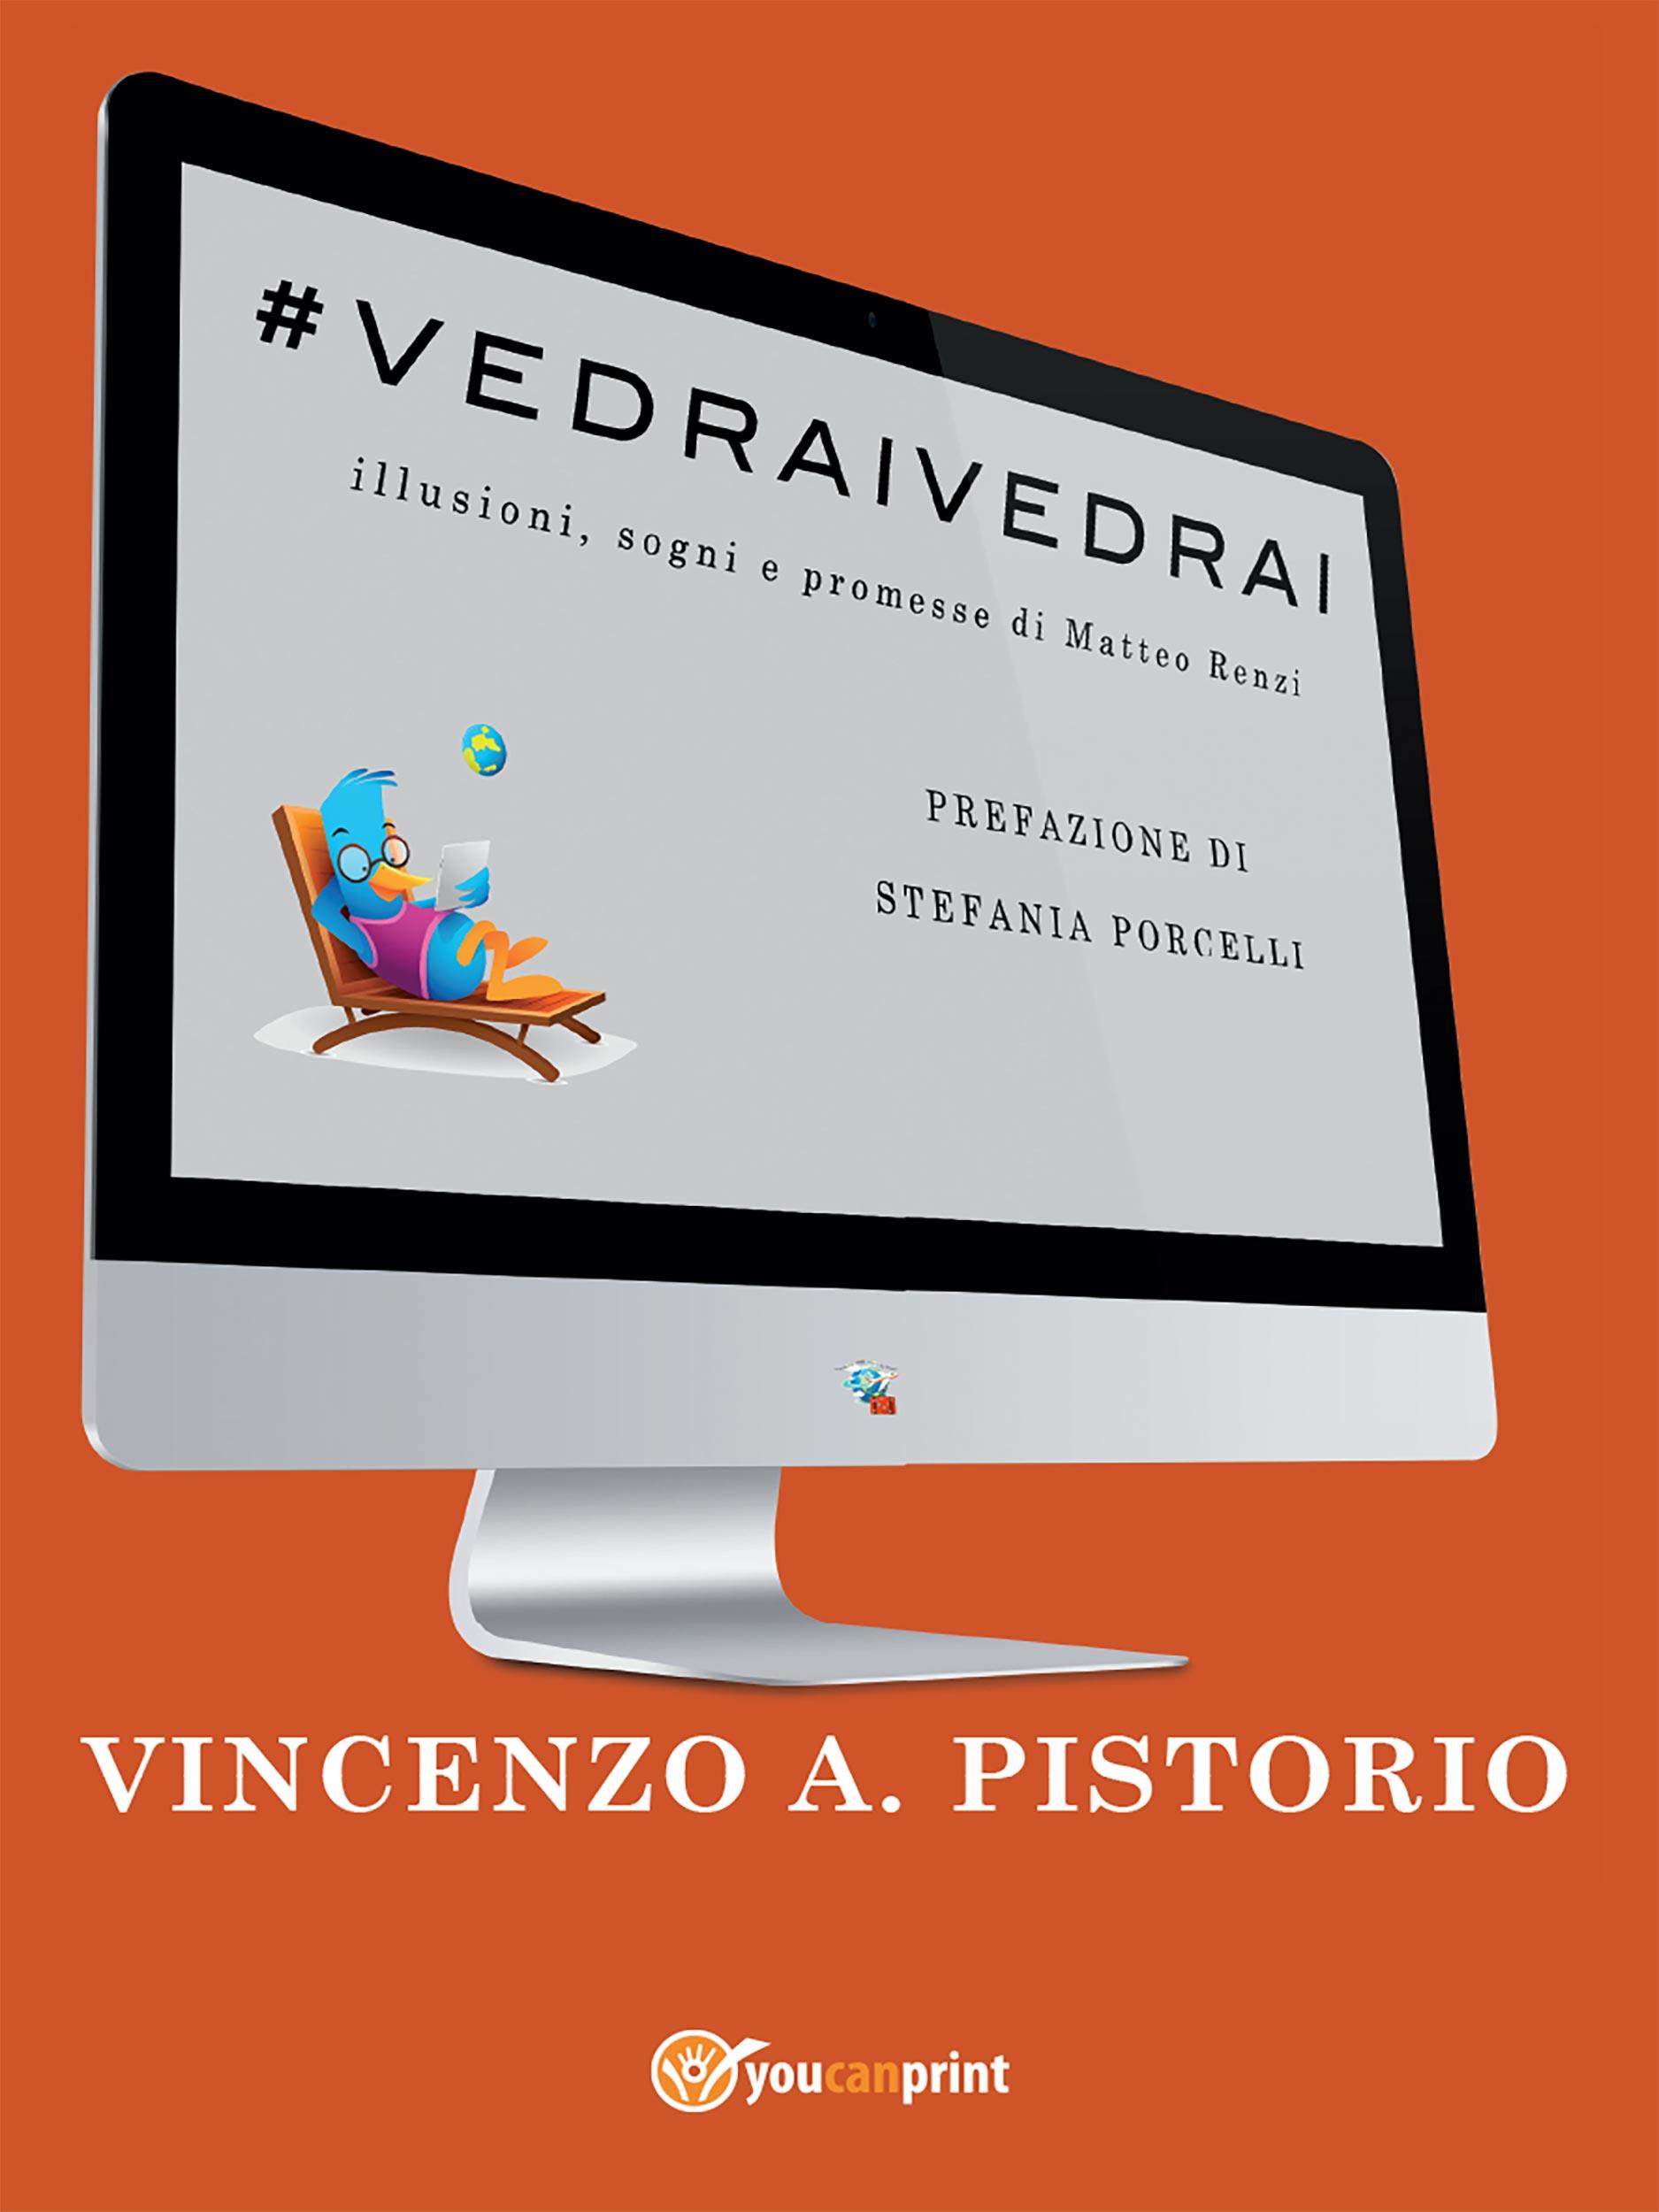 #VEDRAIVEDRAI - Illusioni, sogni e promesse di Matteo Renzi